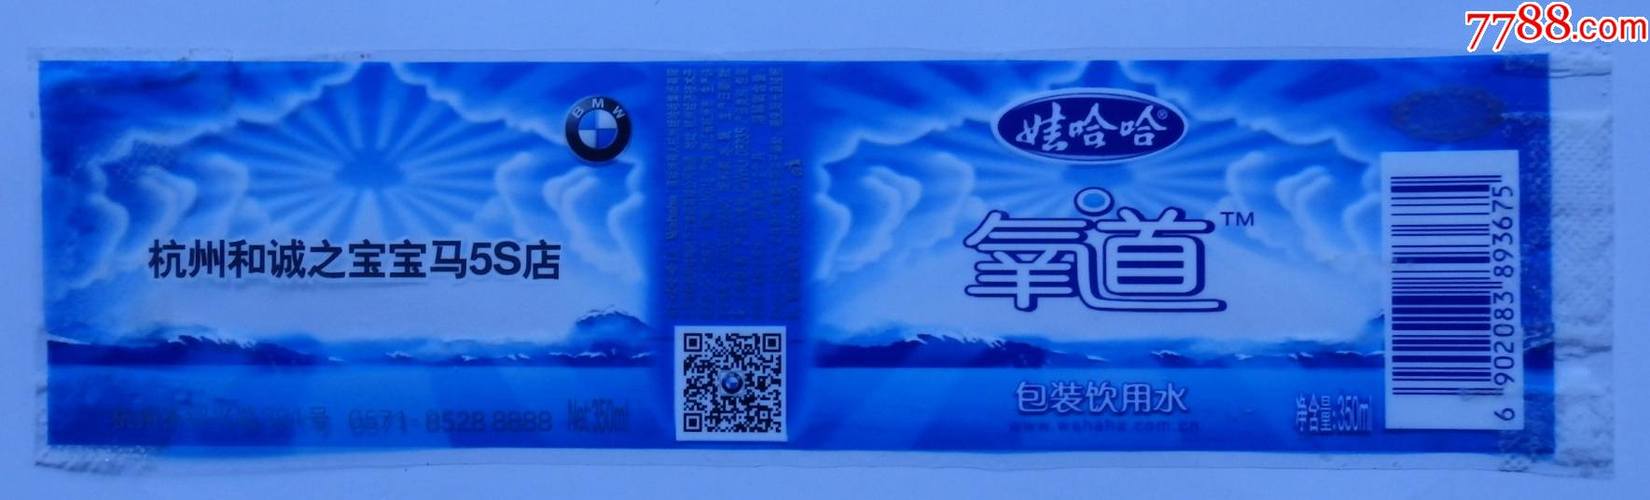 娃哈哈氧道包装饮用水杭州和城之宝宝马5s店定制版商标1枚